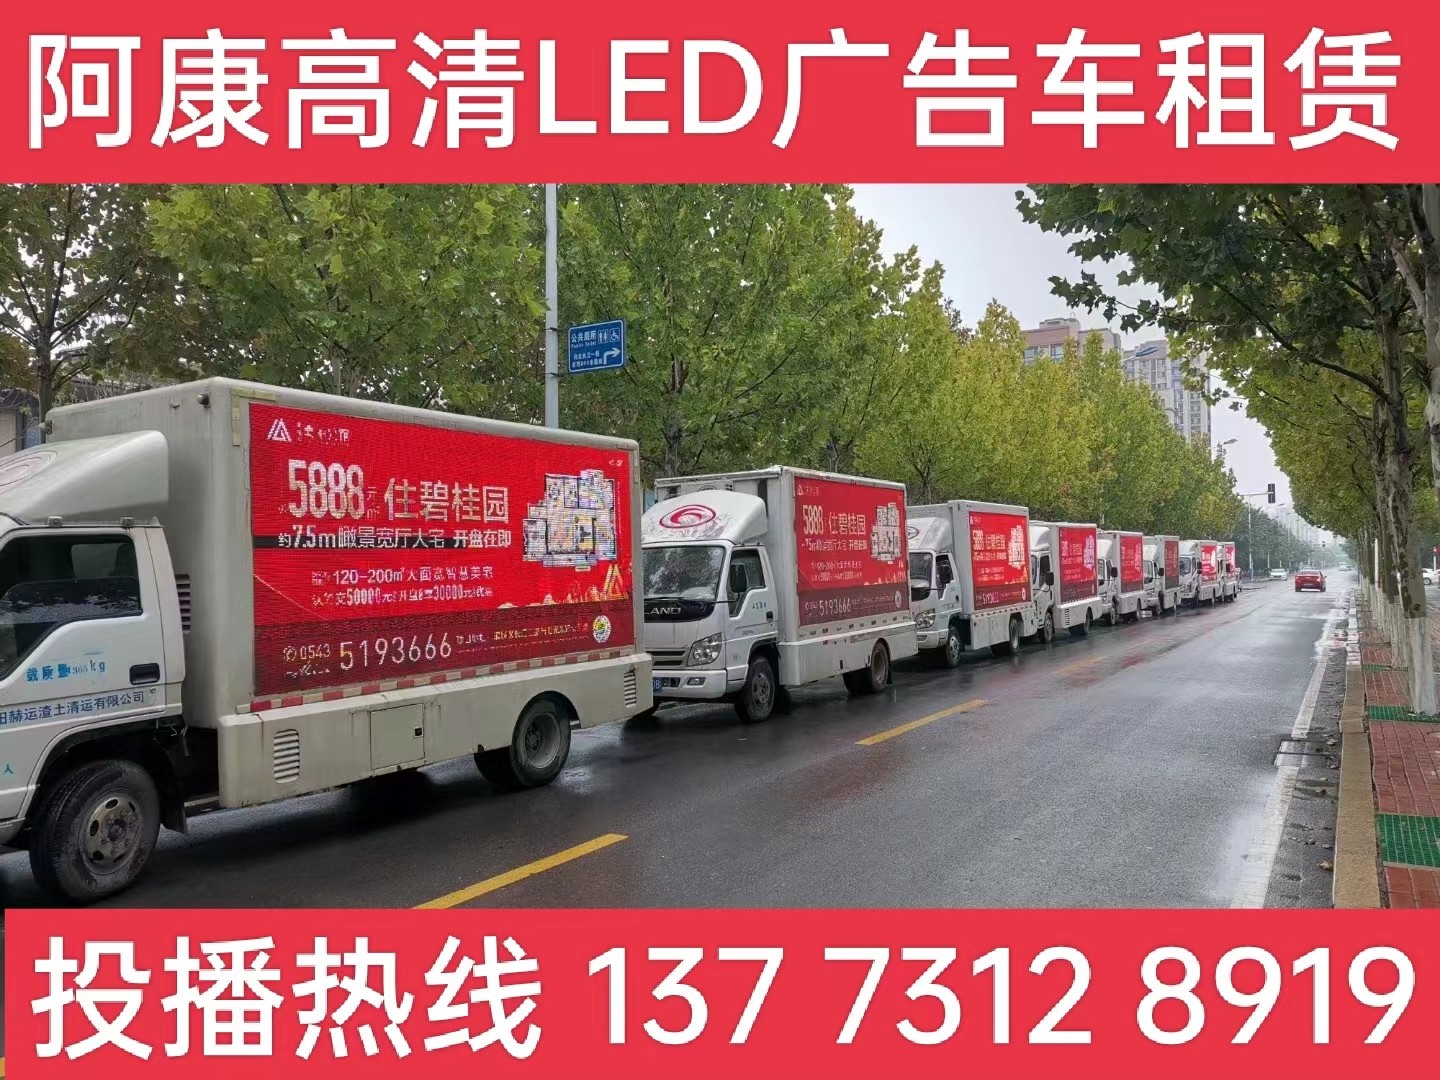 苏州宣传车租赁公司-楼盘LED广告车投放